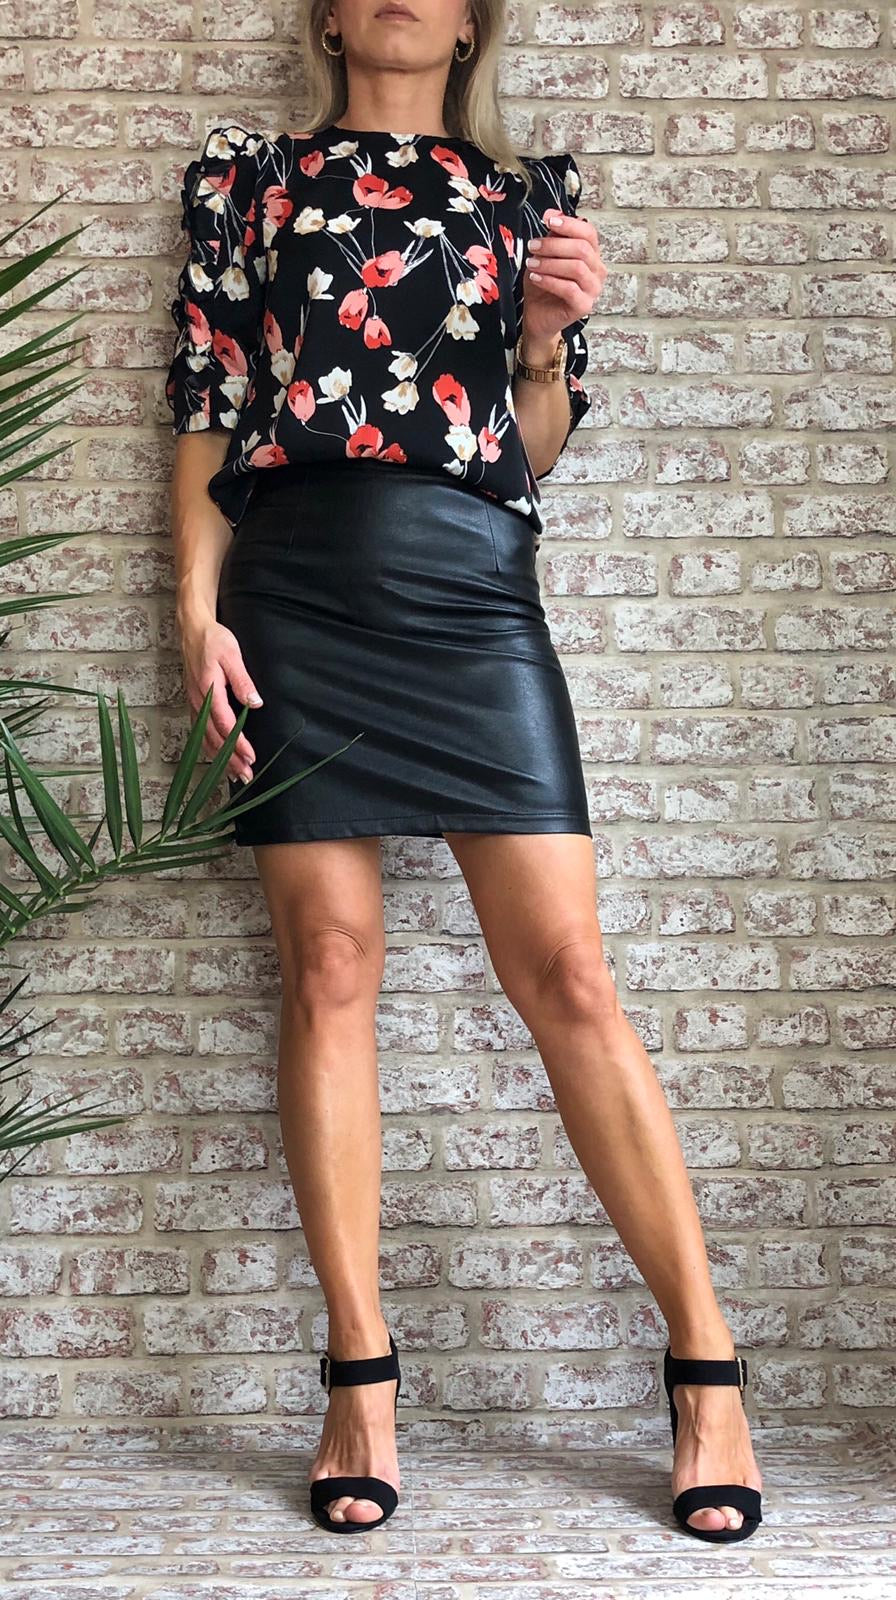 Black PU Leather Skirt